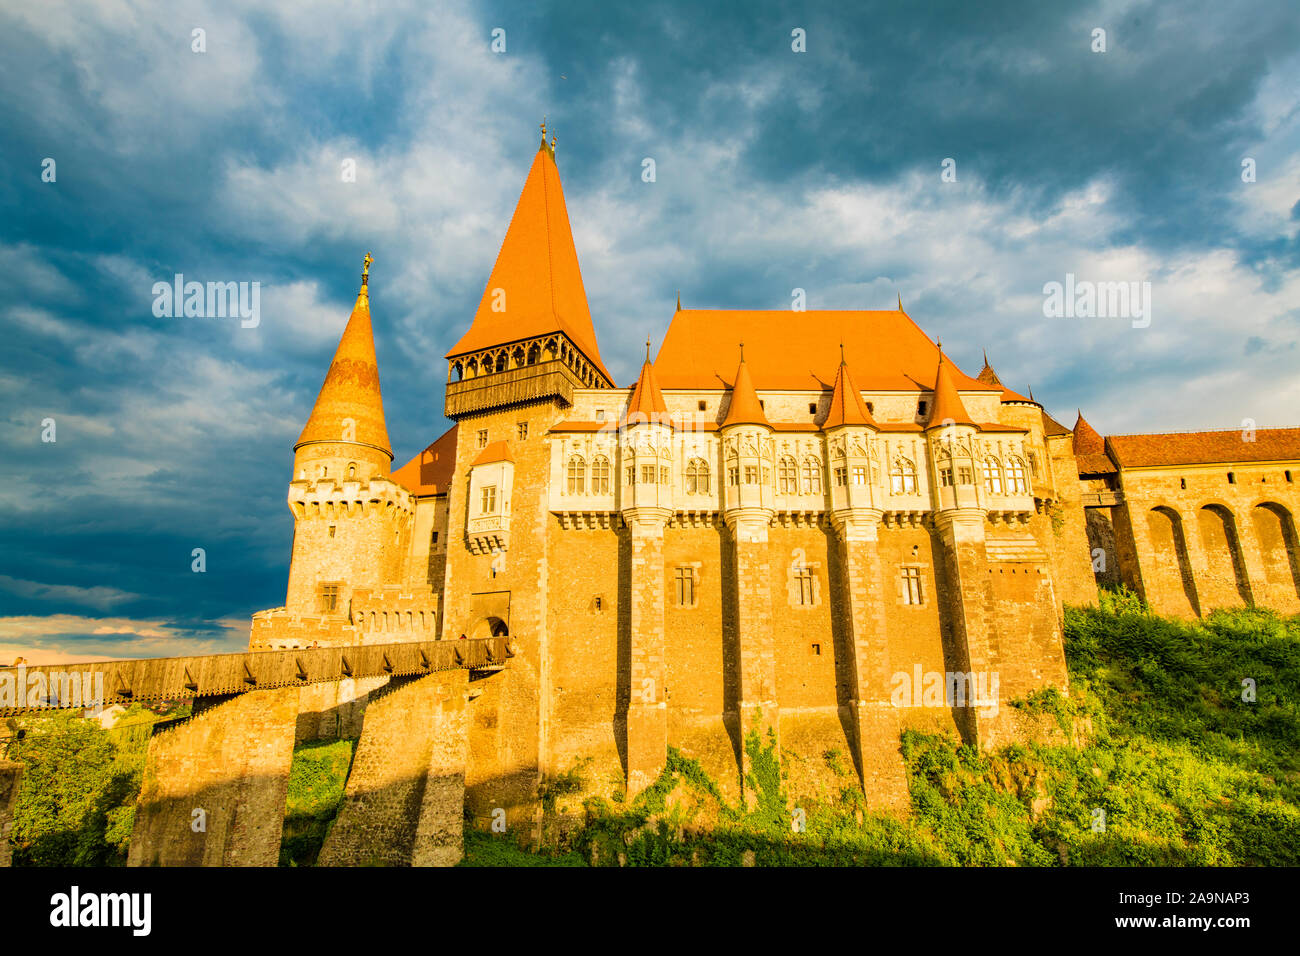 El castillo de Corvin, Transilvania, Rumania, desde 1456 hasta el siglo XVII Reniassance gótico , Vlad el Empalador fue encarcelado aquí Foto de stock